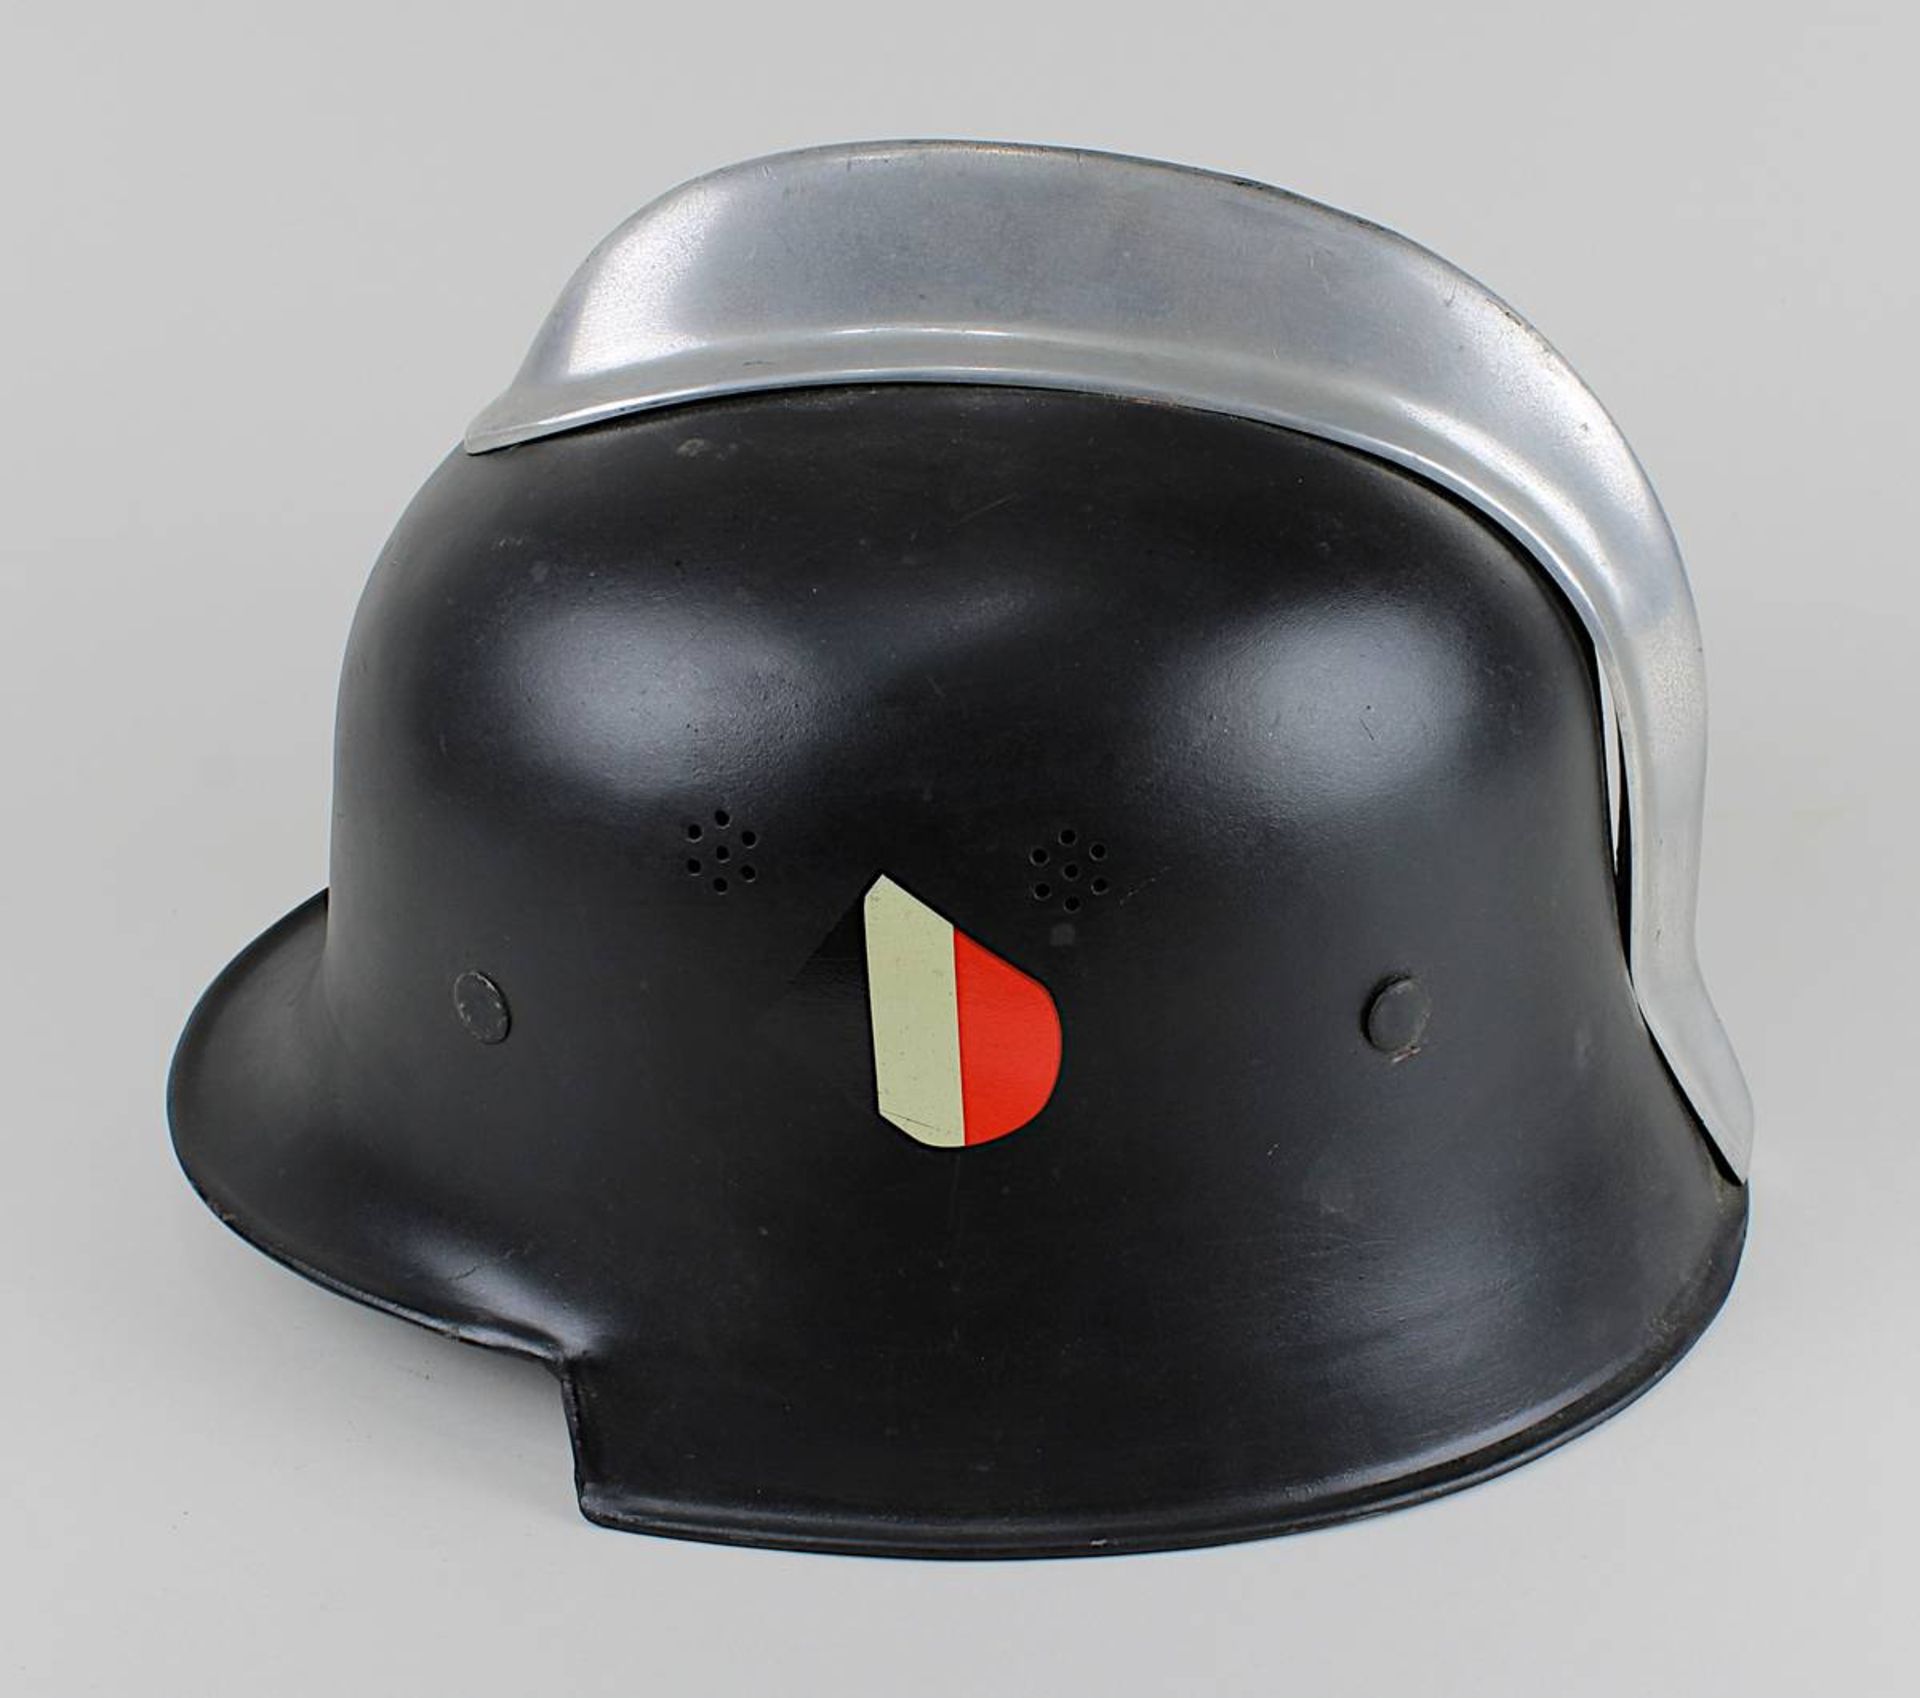 Helm der Feuerlöschpolizei, Deutsches Reich 1933-45, mit Ziegelbrecher, M34, neu lackiert und neue - Bild 3 aus 5